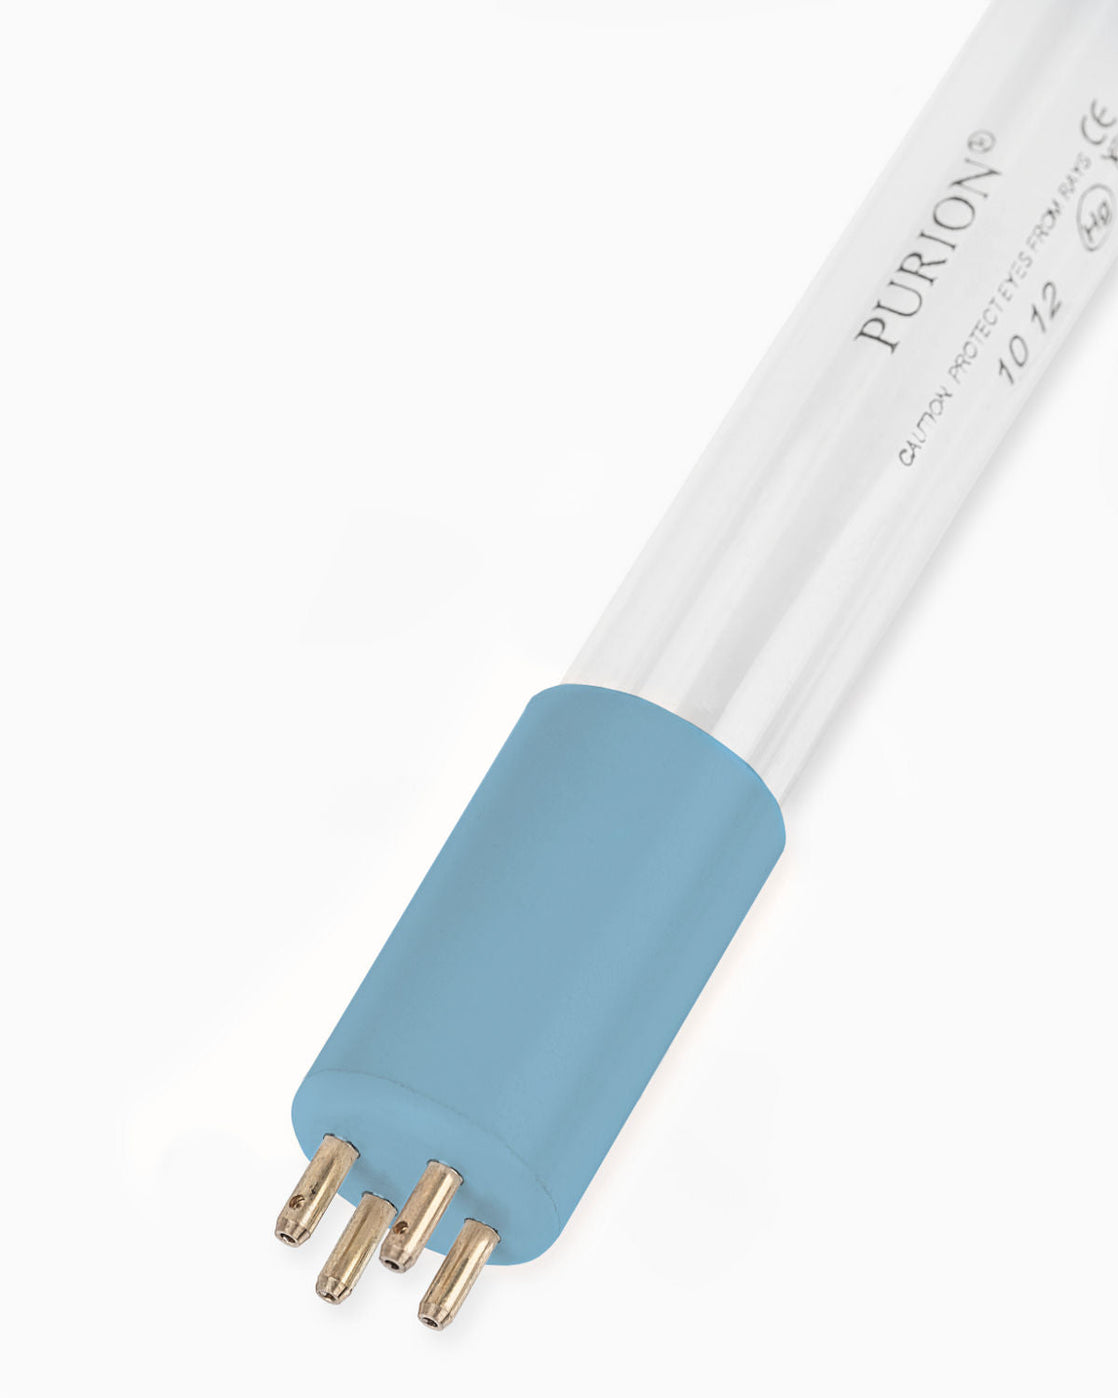 Eine PURION IBC Universal 36W SPL BS Blaulichtröhre auf weißem Hintergrund, entworfen für Wasserentnahme von der UV Concept GmbH.